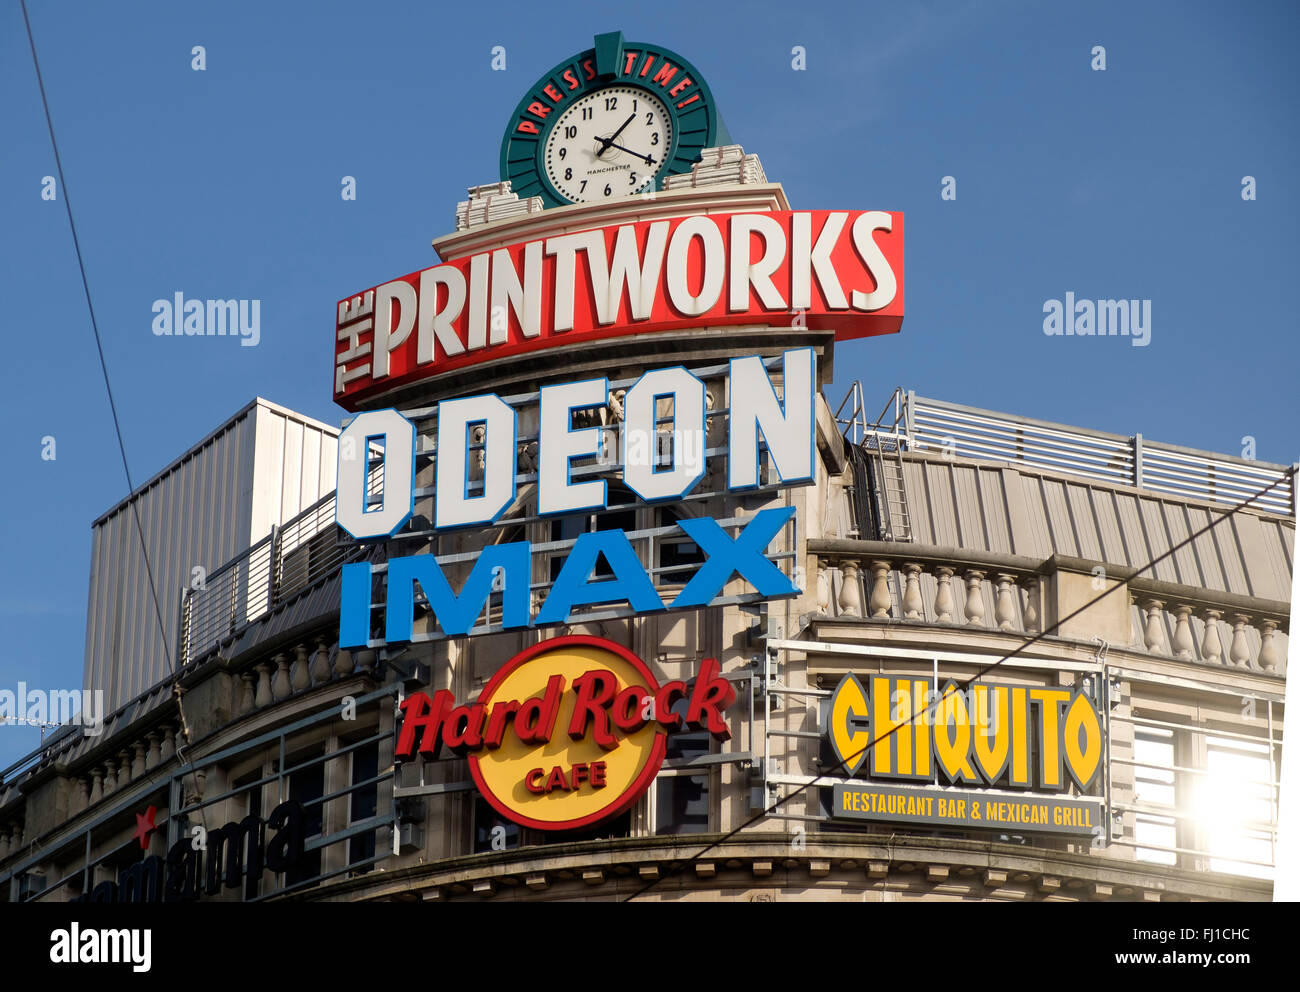 Manchester, UK - 16. Februar 2016: Werbe Schilder über die städtischen Veranstaltungsort Printworks, Manchester Stockfoto